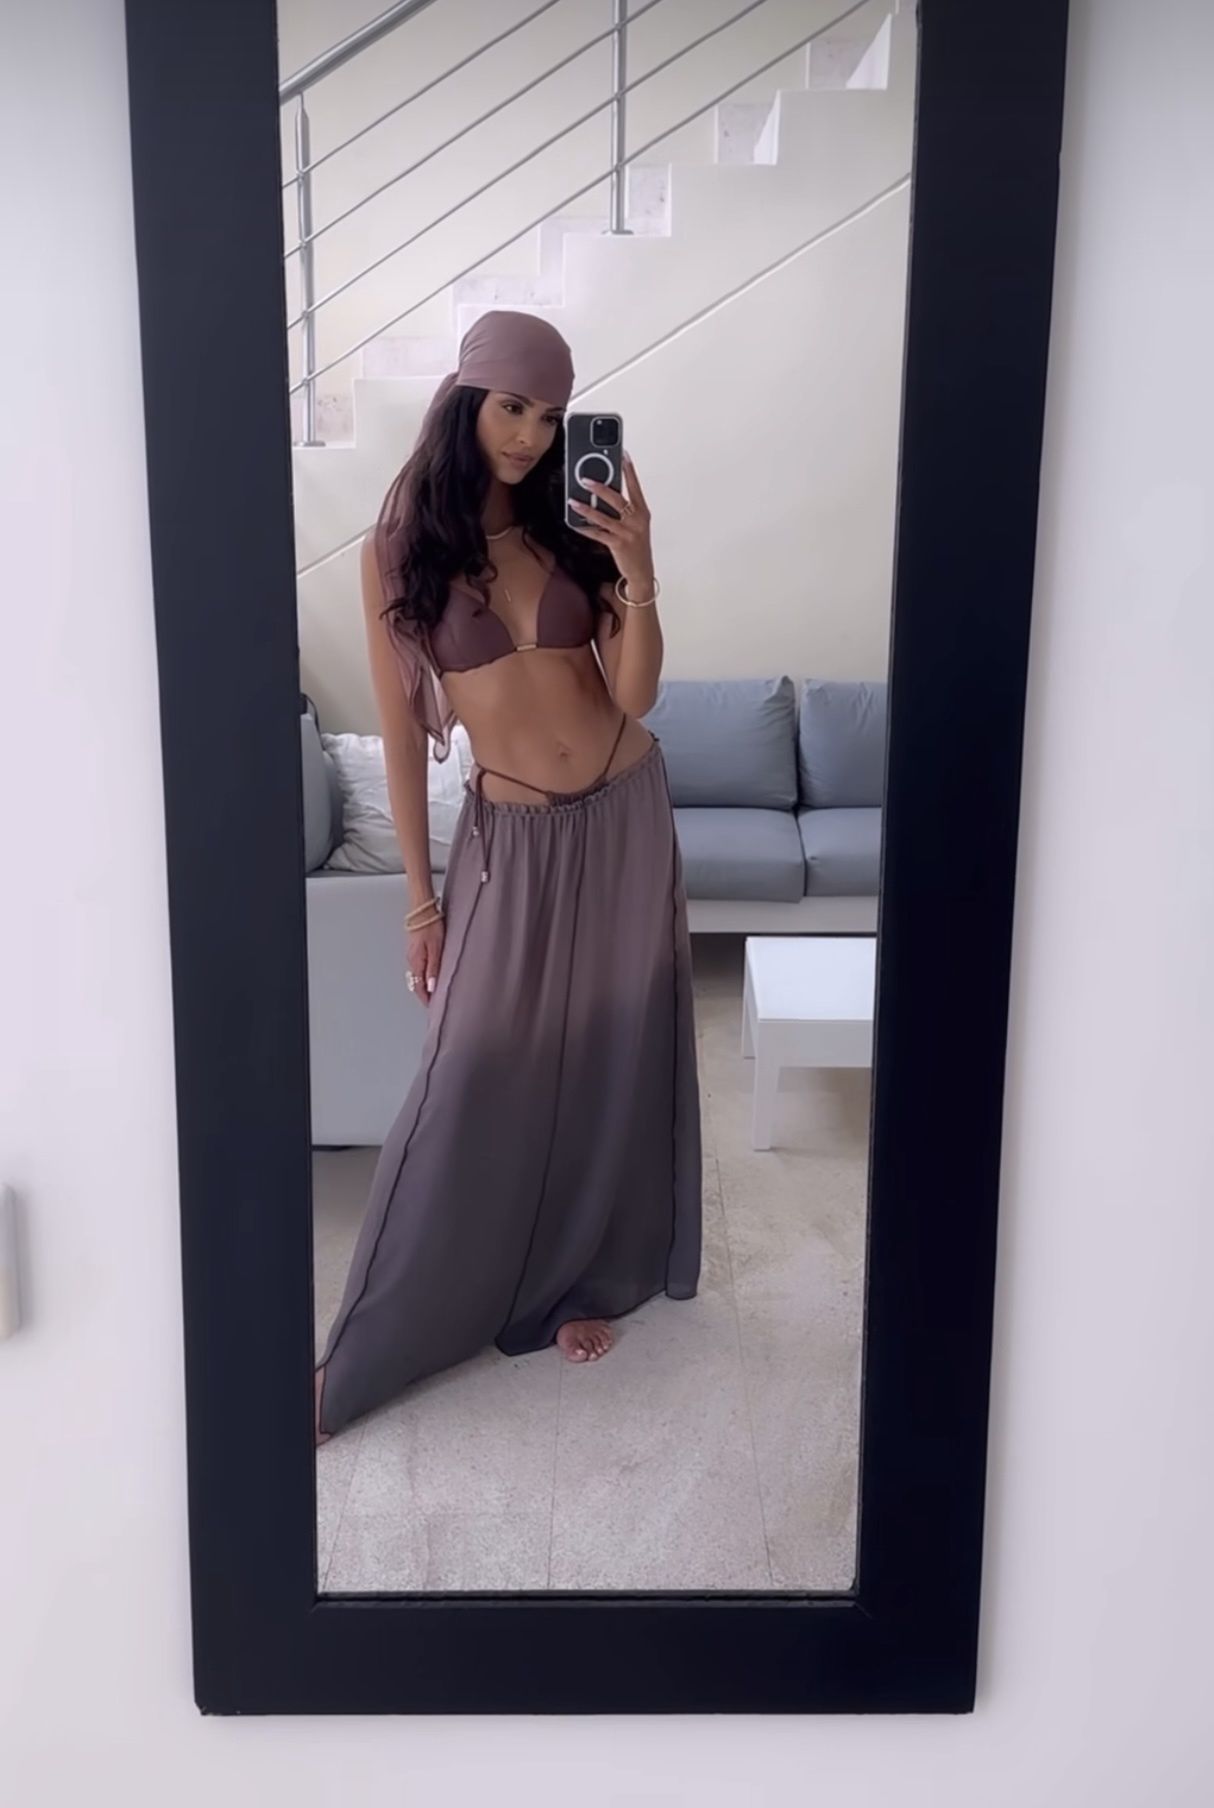 Klaudia El Dursi połączyła różne odcienie brązu 
Instagram/klaudia_el_dursi